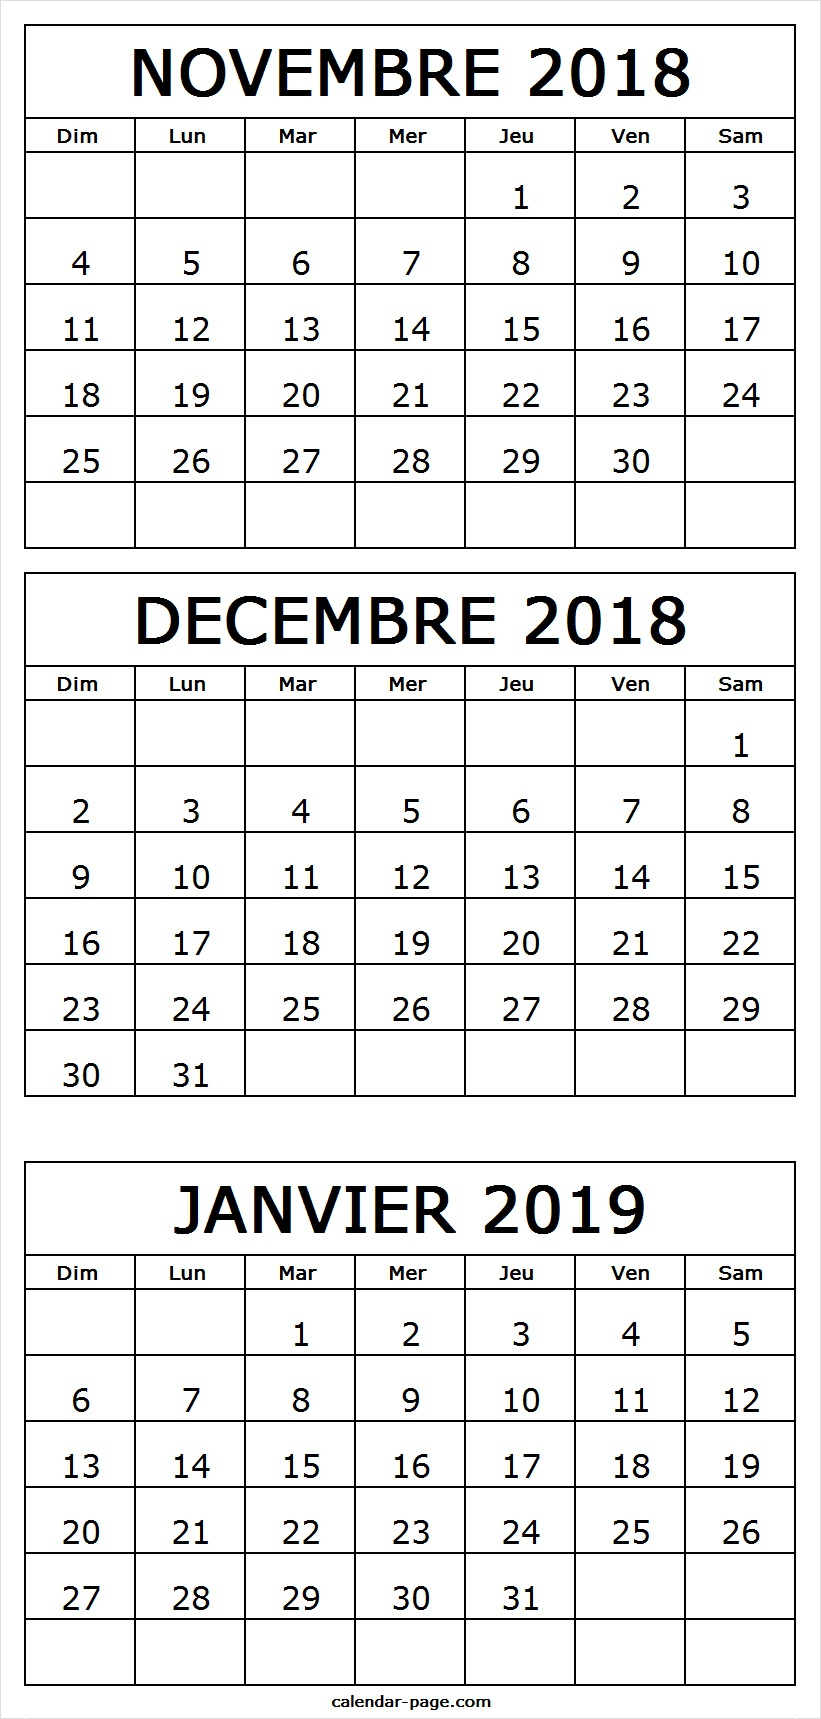 Calendrier Novembre Decembre 2018 Janvier 2019 A Imprimer dedans Calendrier 2018 Imprimable Gratuit